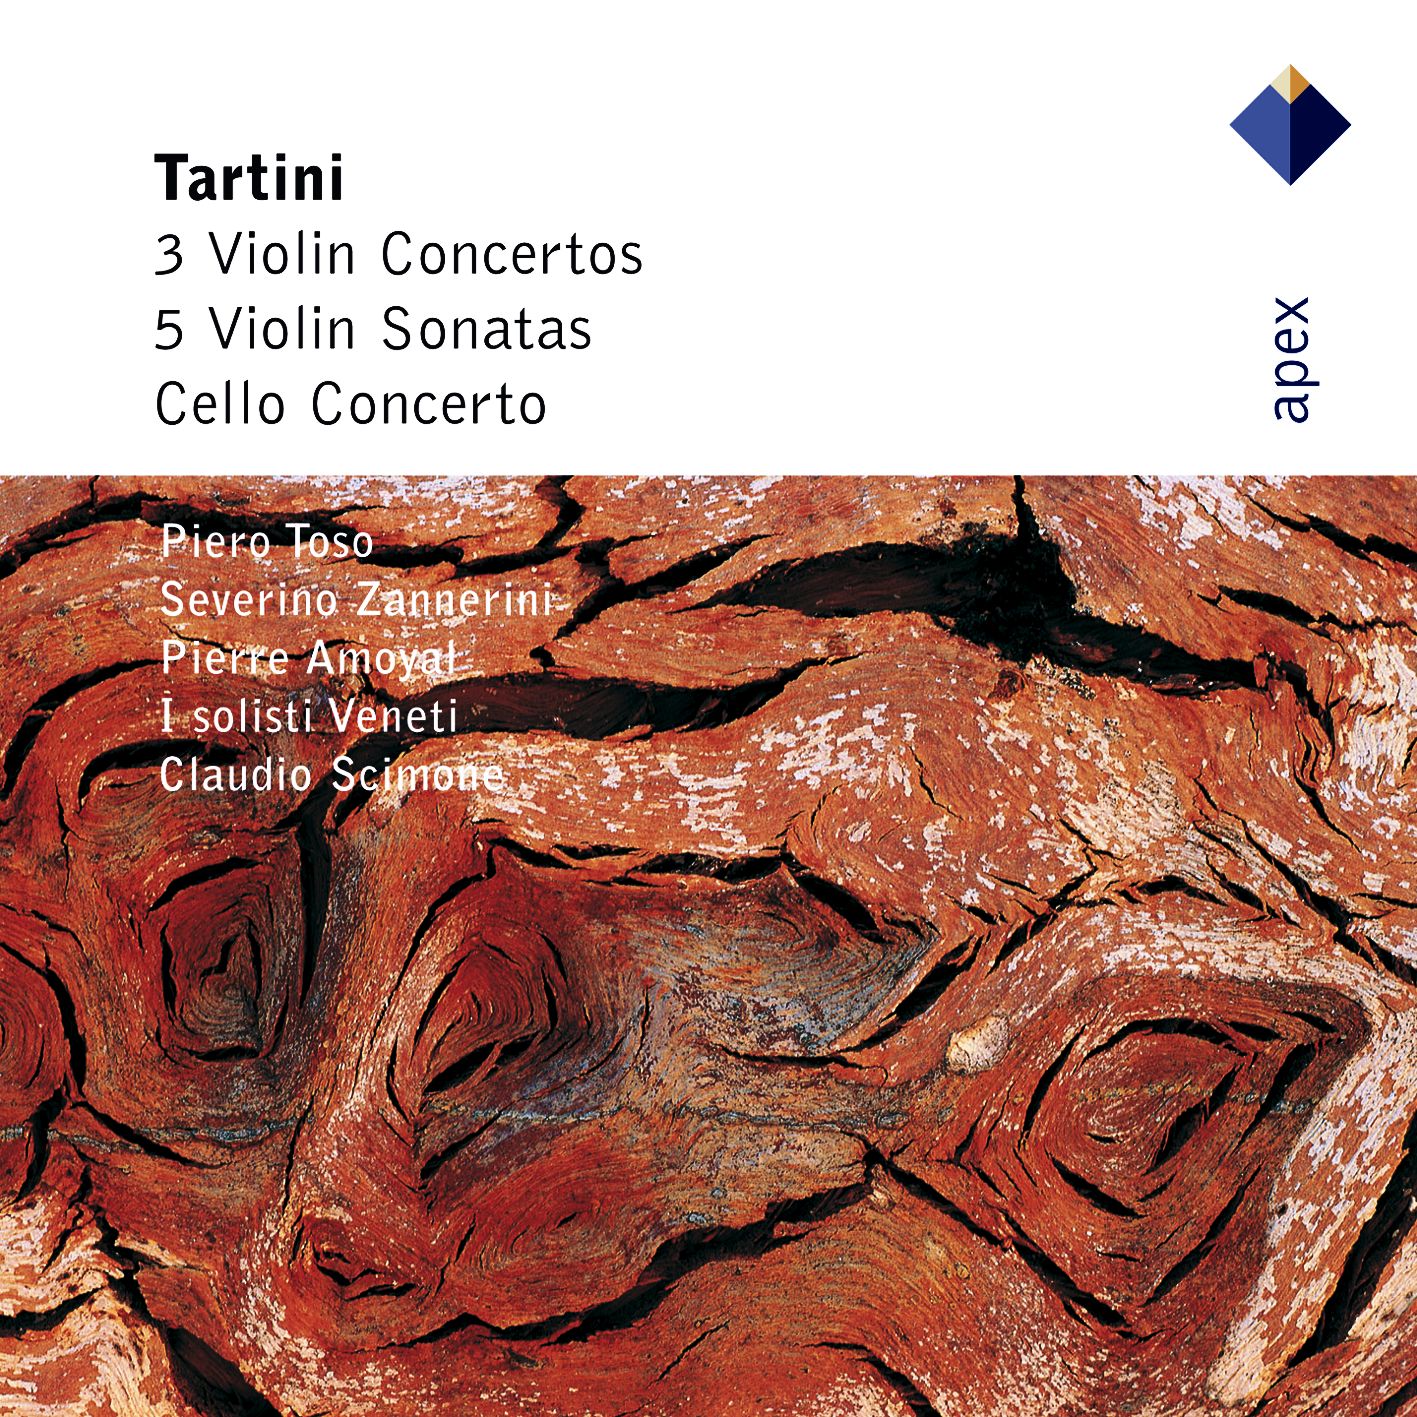 Tartini : Violin Concerto in G major D82 : III Allegro